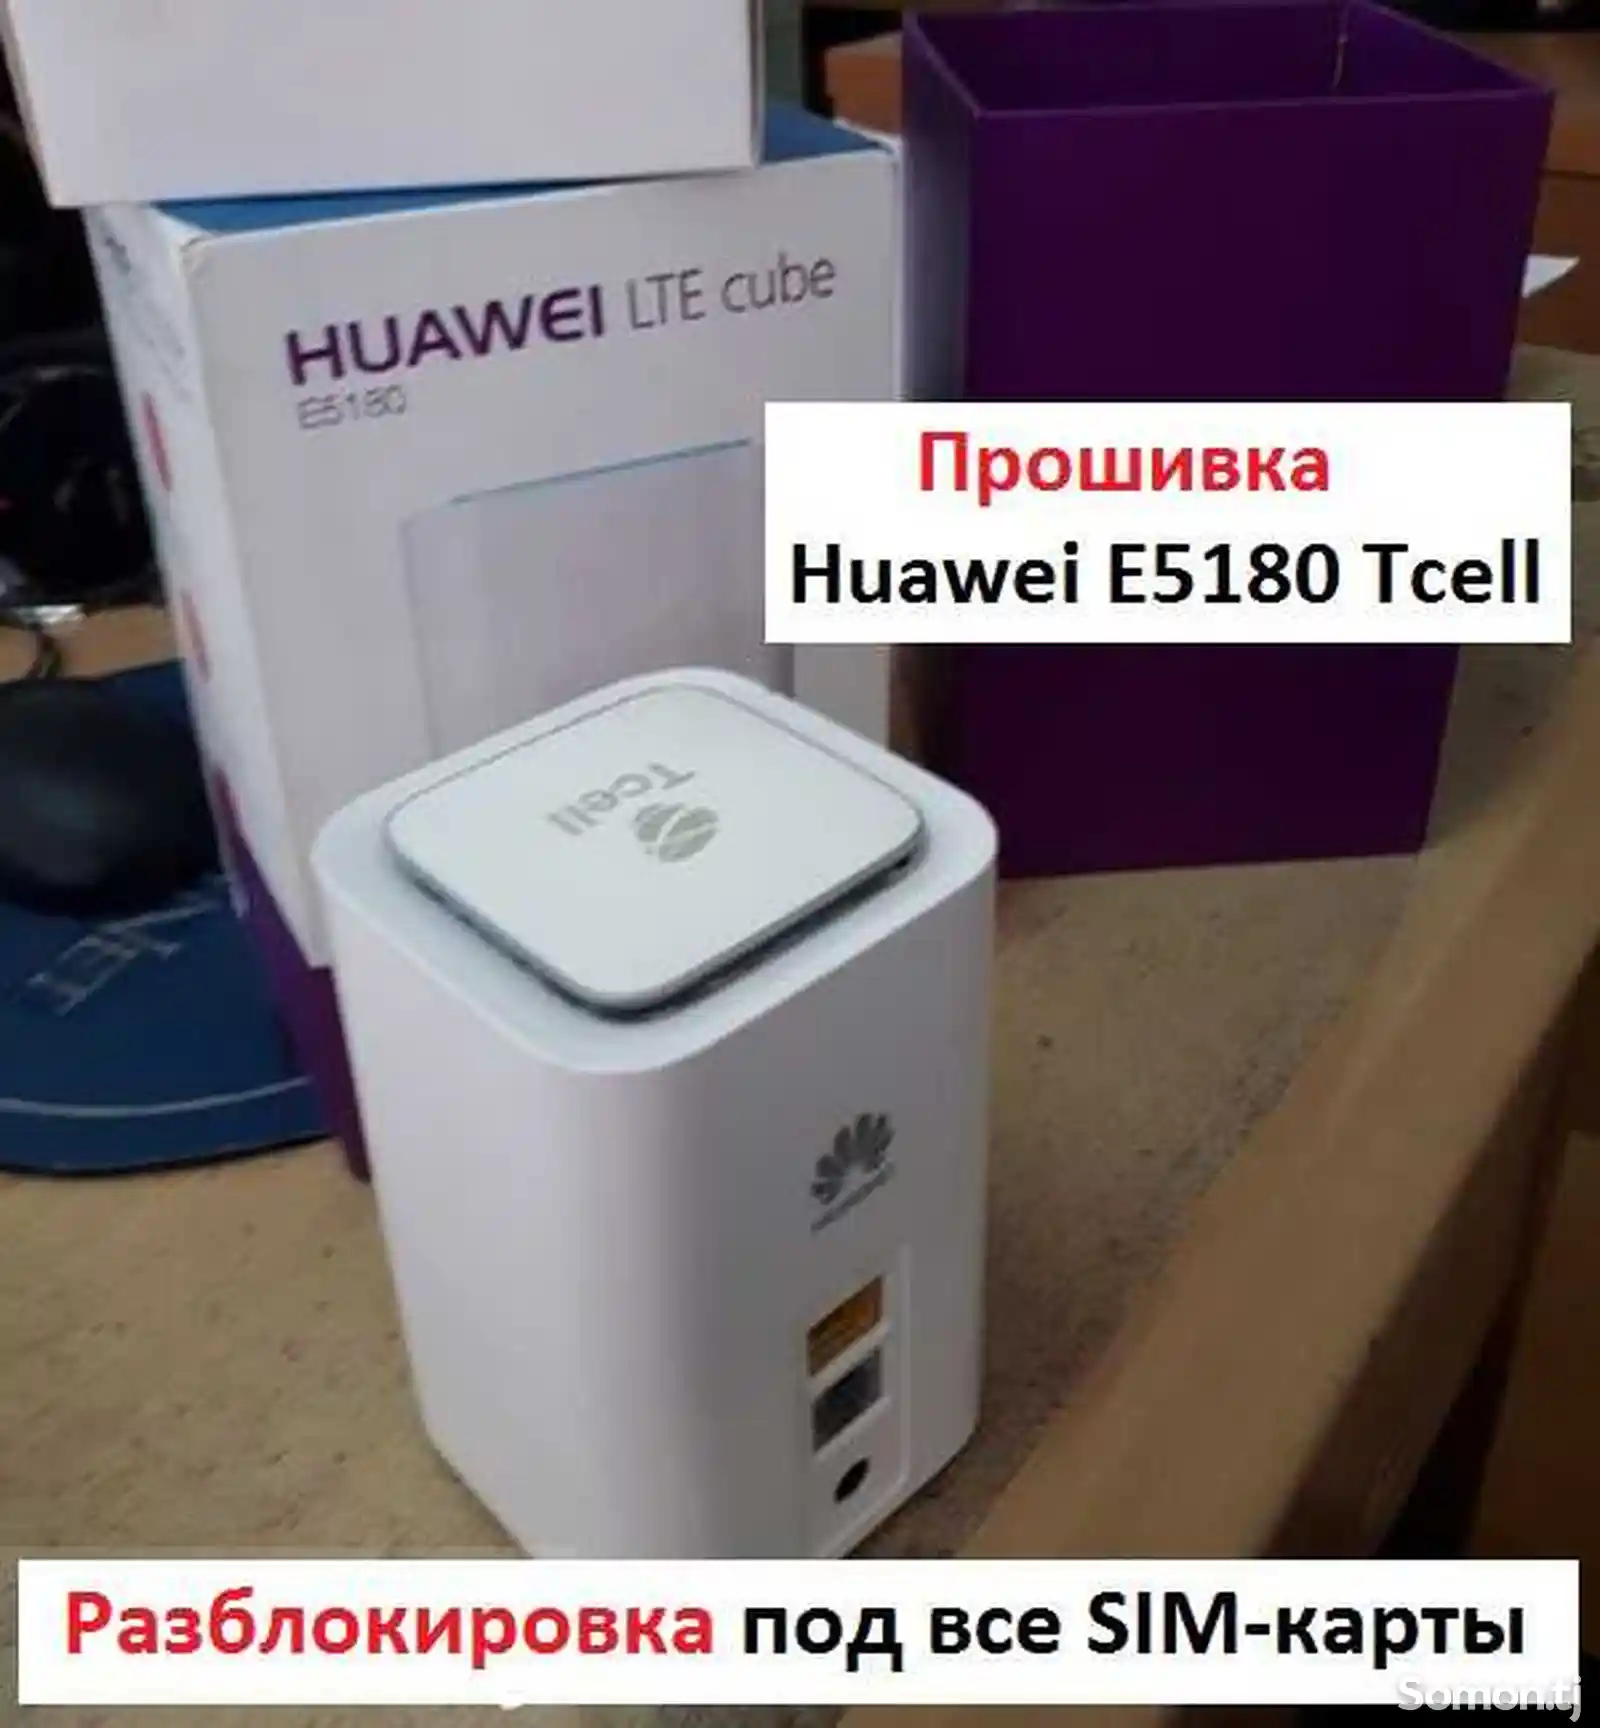 Разблокировка и прошивка Wi-Fi роутера Huawei E5180 и Е5180s-2-1